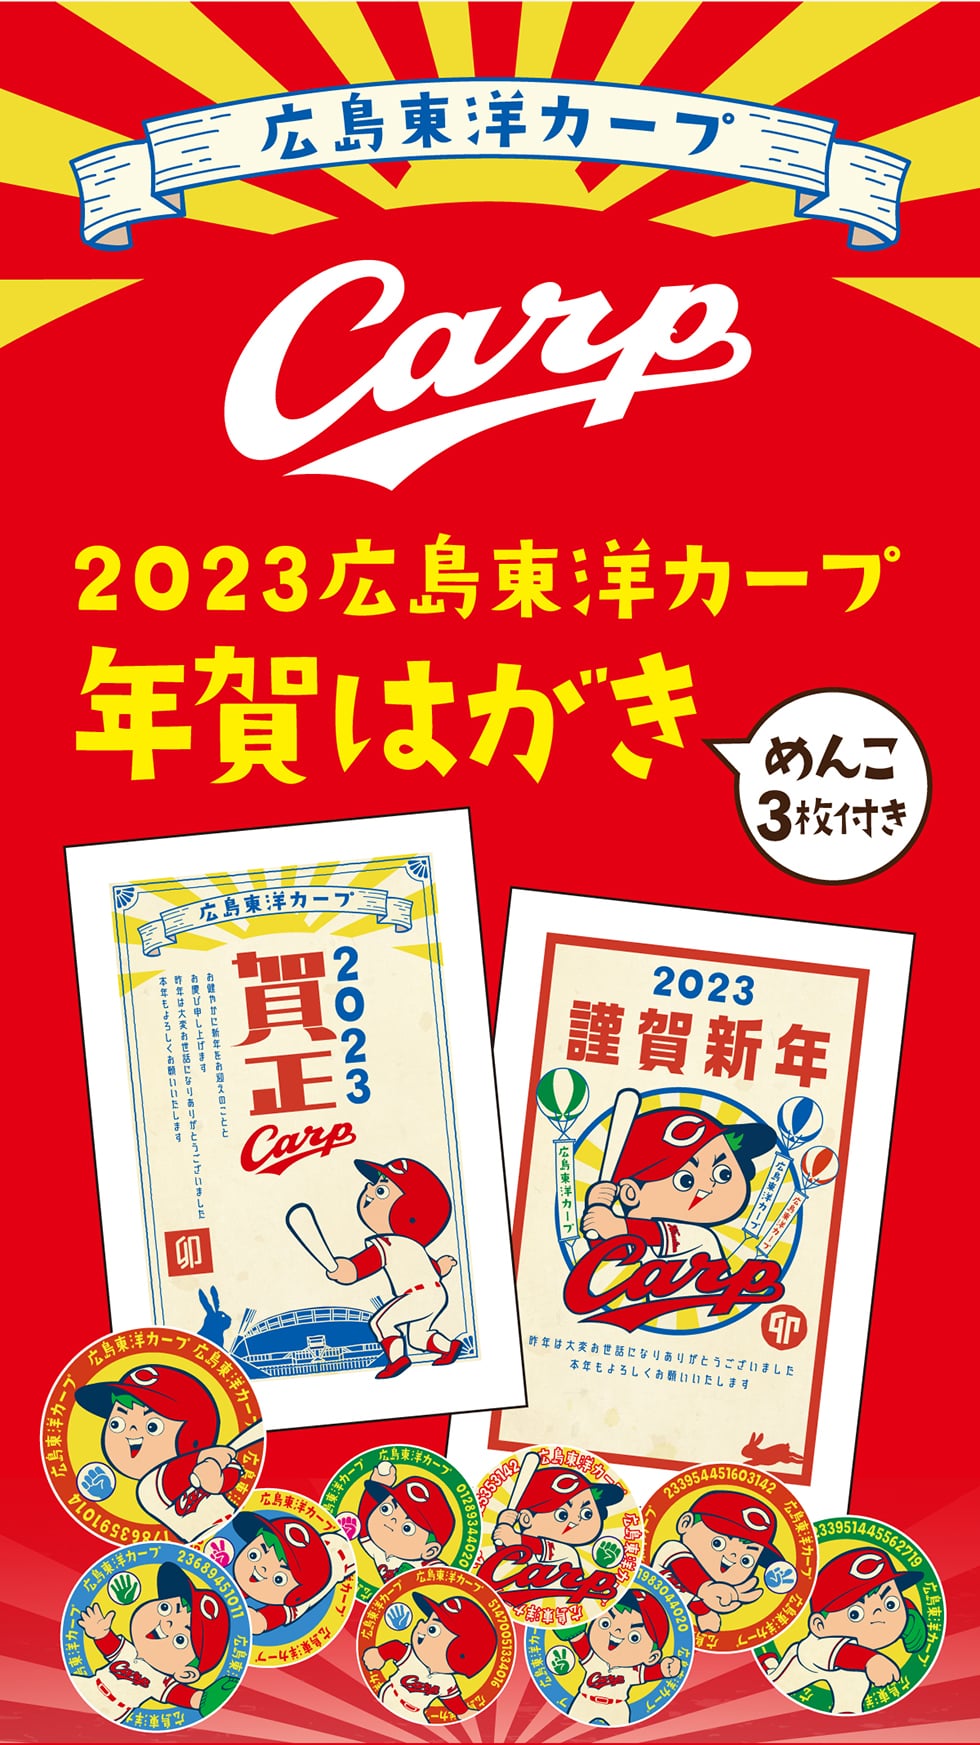 広島東洋カープ Carp 2023広島東洋カープ 年賀はがき めんこ3枚付き